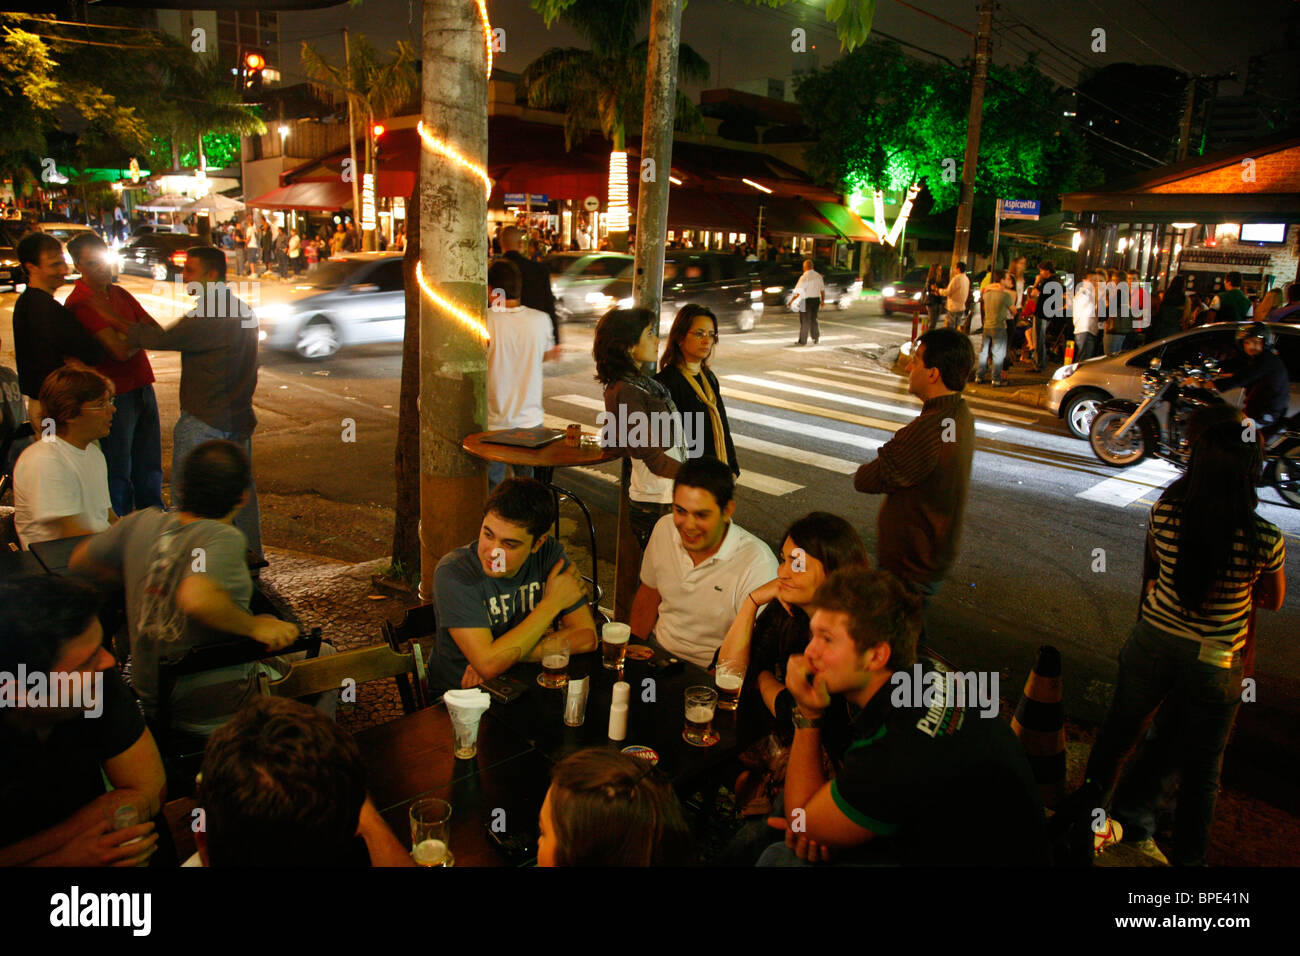 Menschen im Bereich Vila Madalena, bekannt für seine Bars Restaurants und Nightlife-Szenen. Sao Paulo, Brasilien. Stockfoto